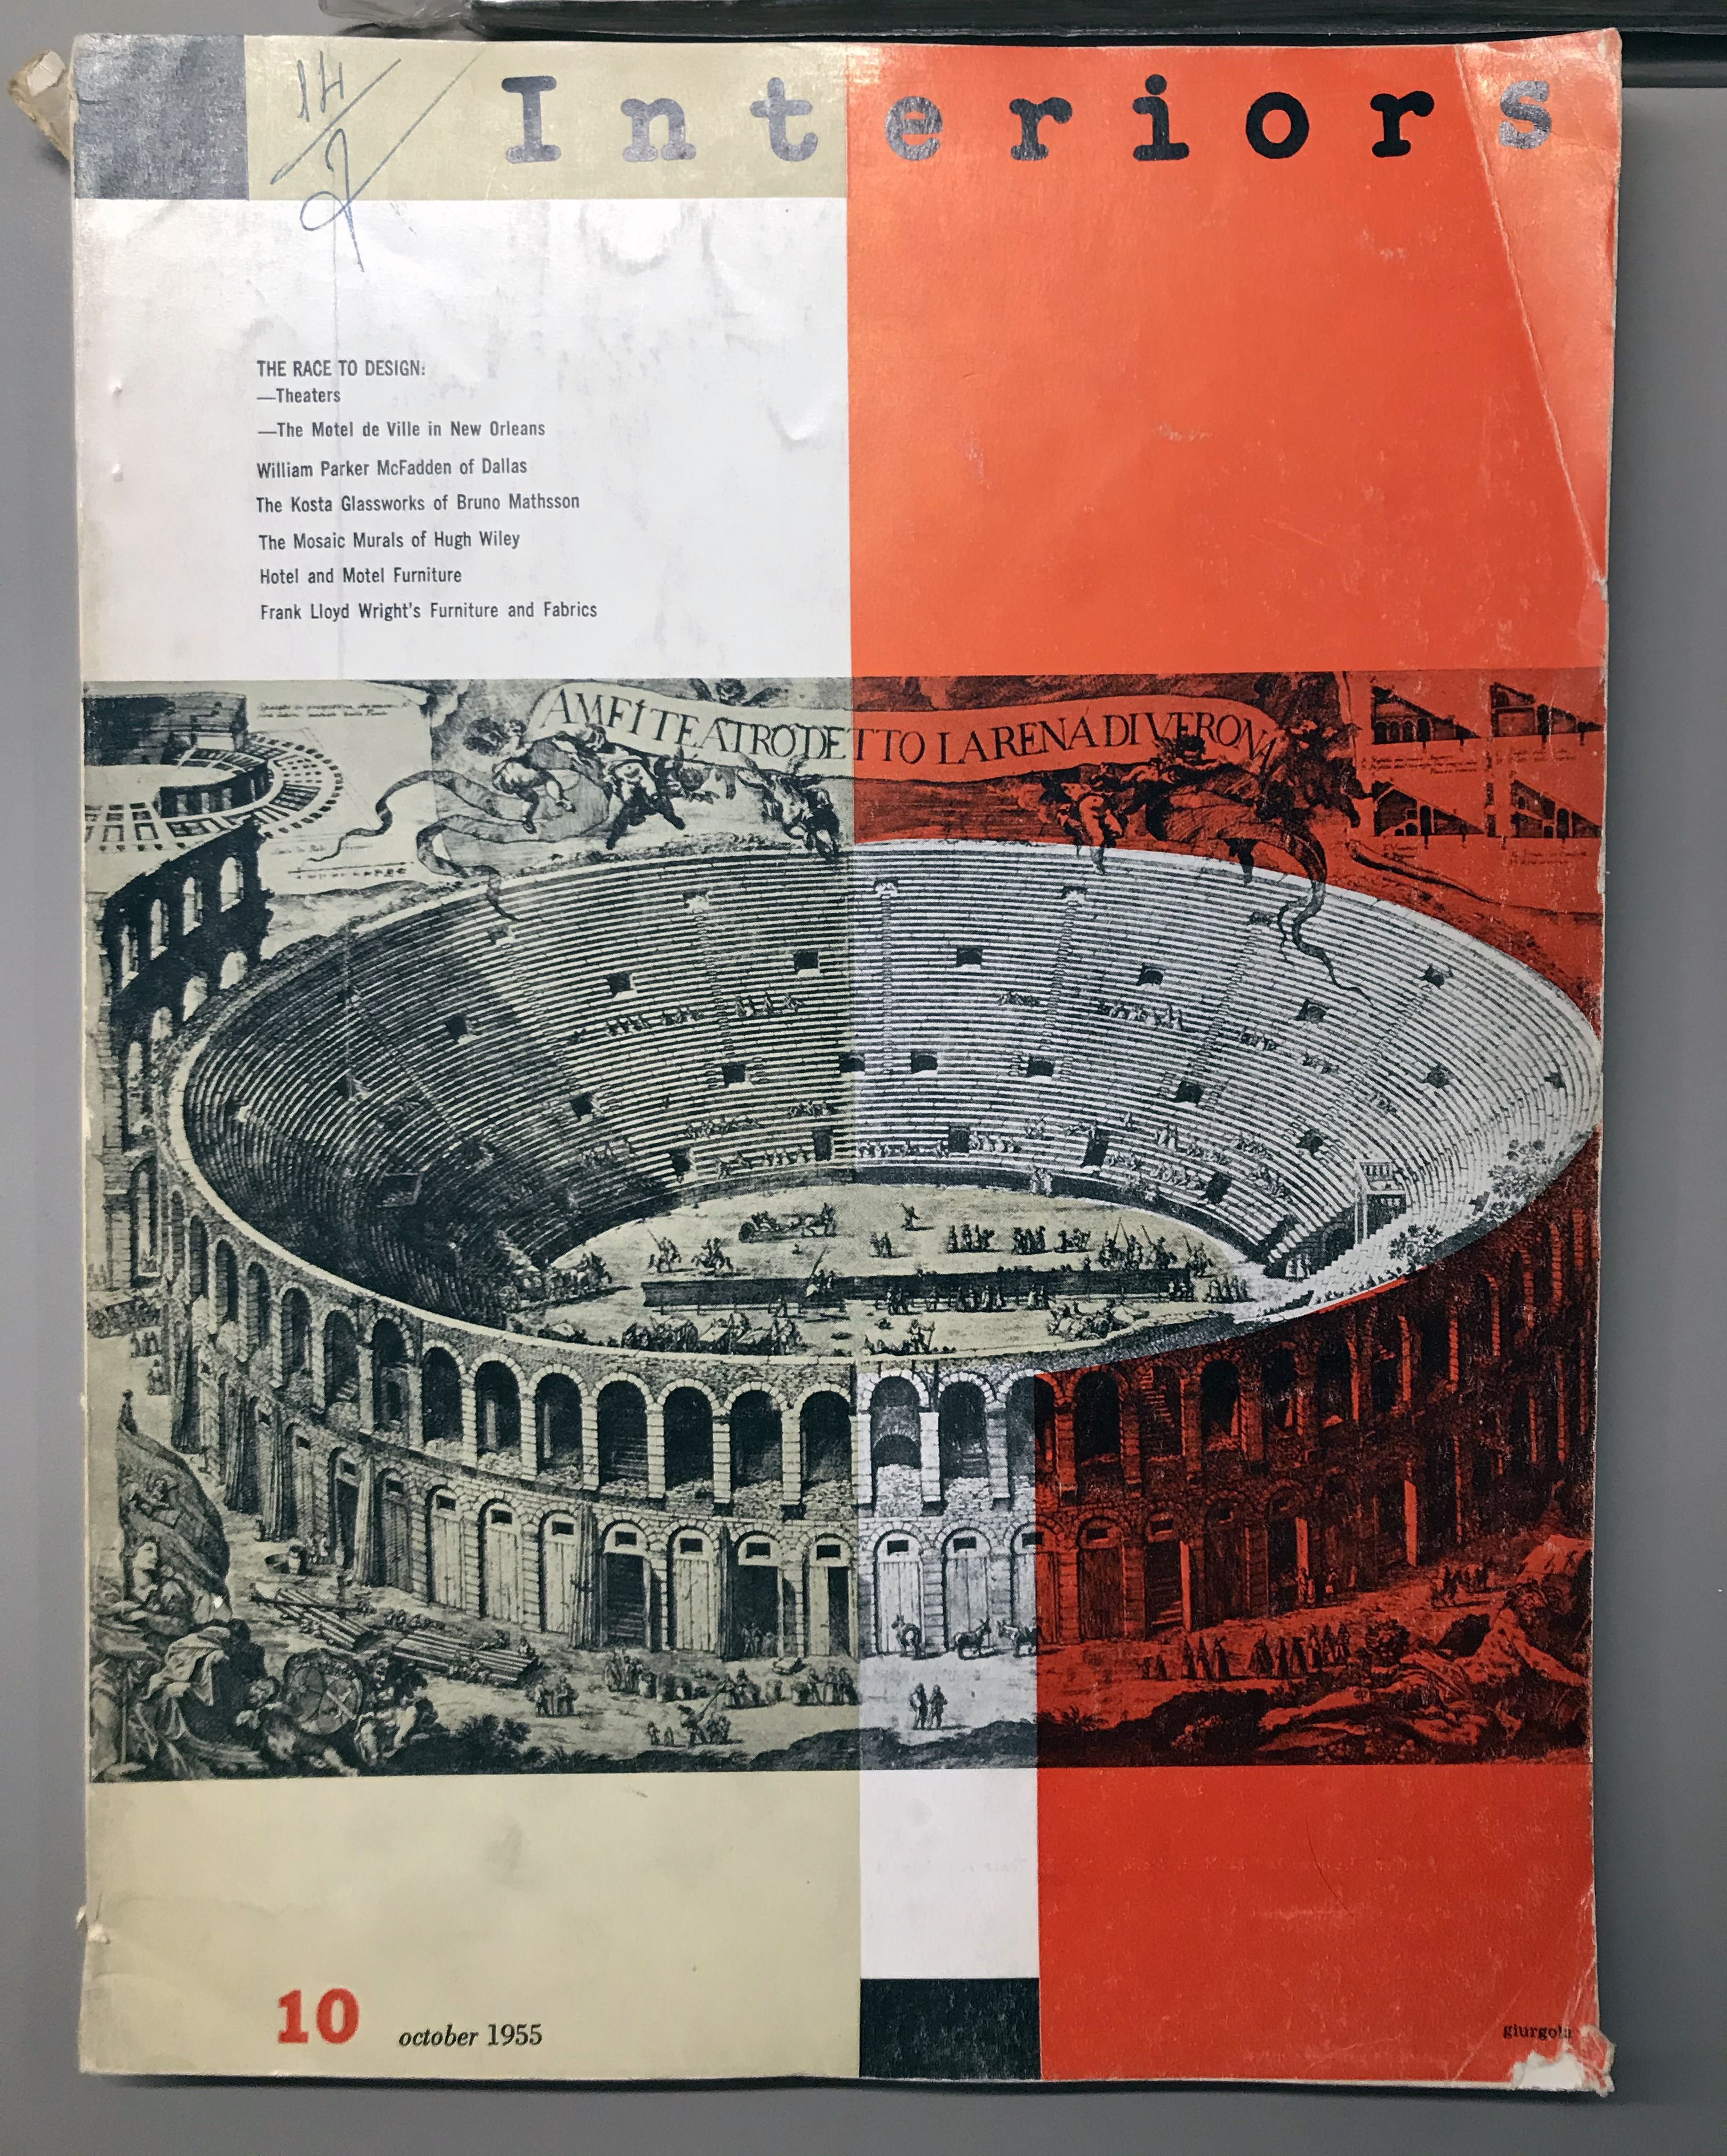 Aldo Giurgola's cover, October 1955